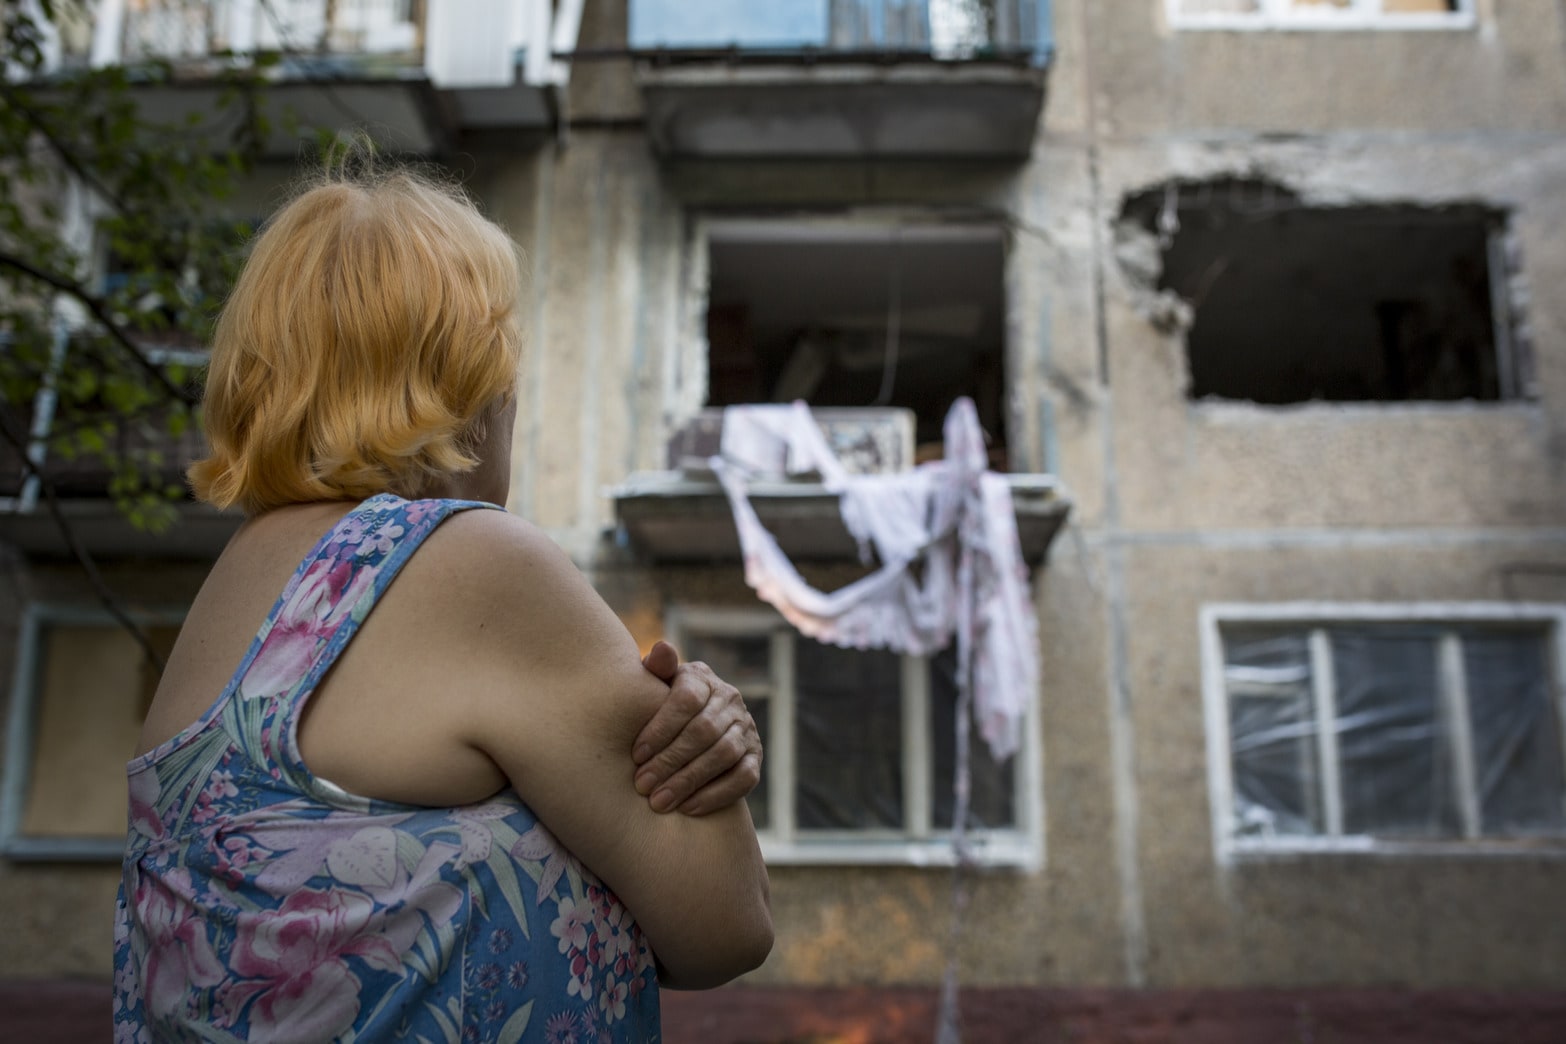 Wetten tellen in Donetsk elke dag iets minder